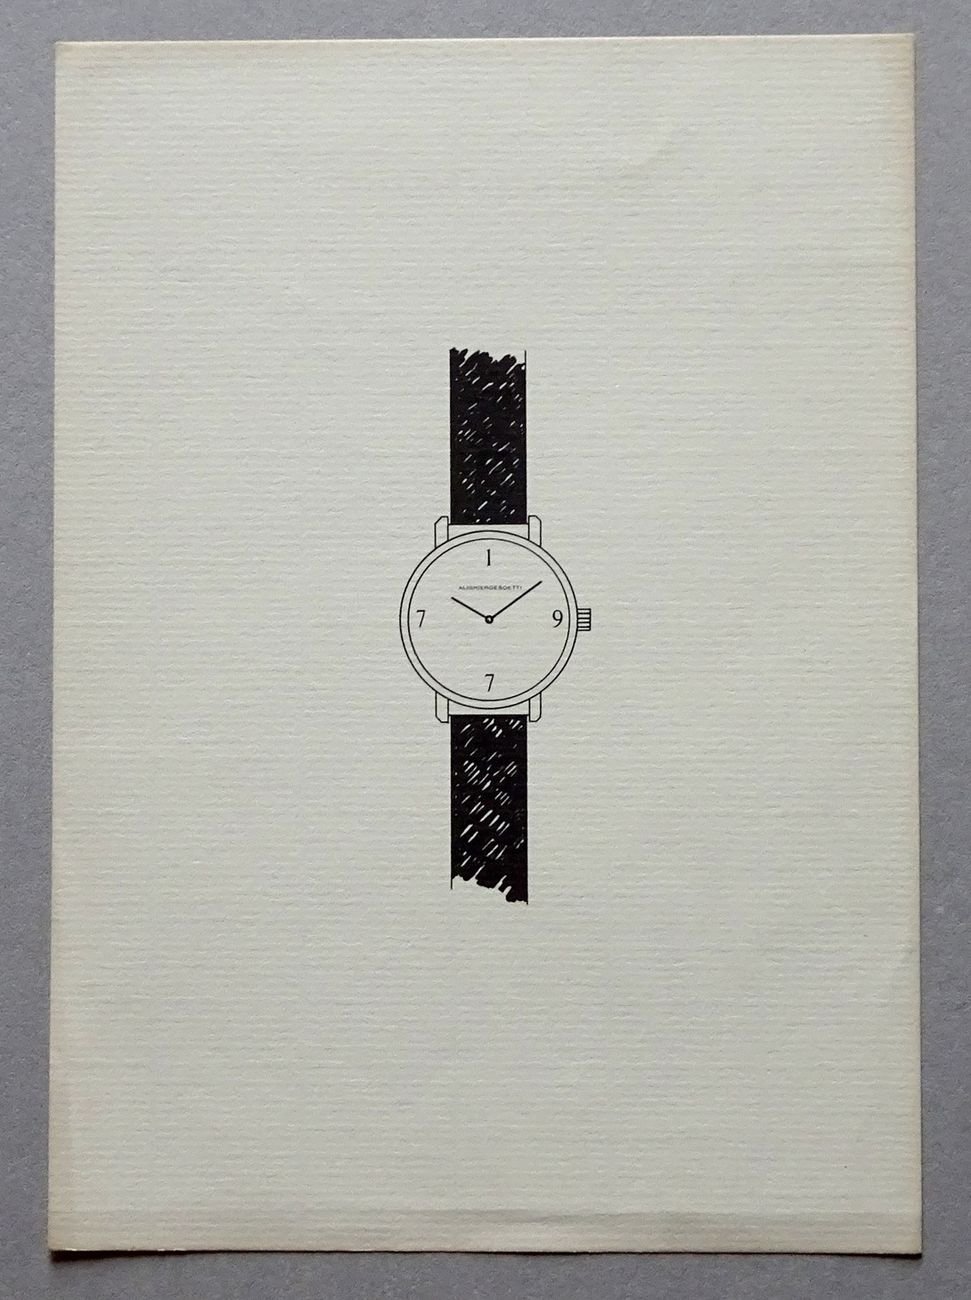 Alighiero Boetti. L’orologio annuale, 1977, invito. Archivio Beatrice Monti della Corte